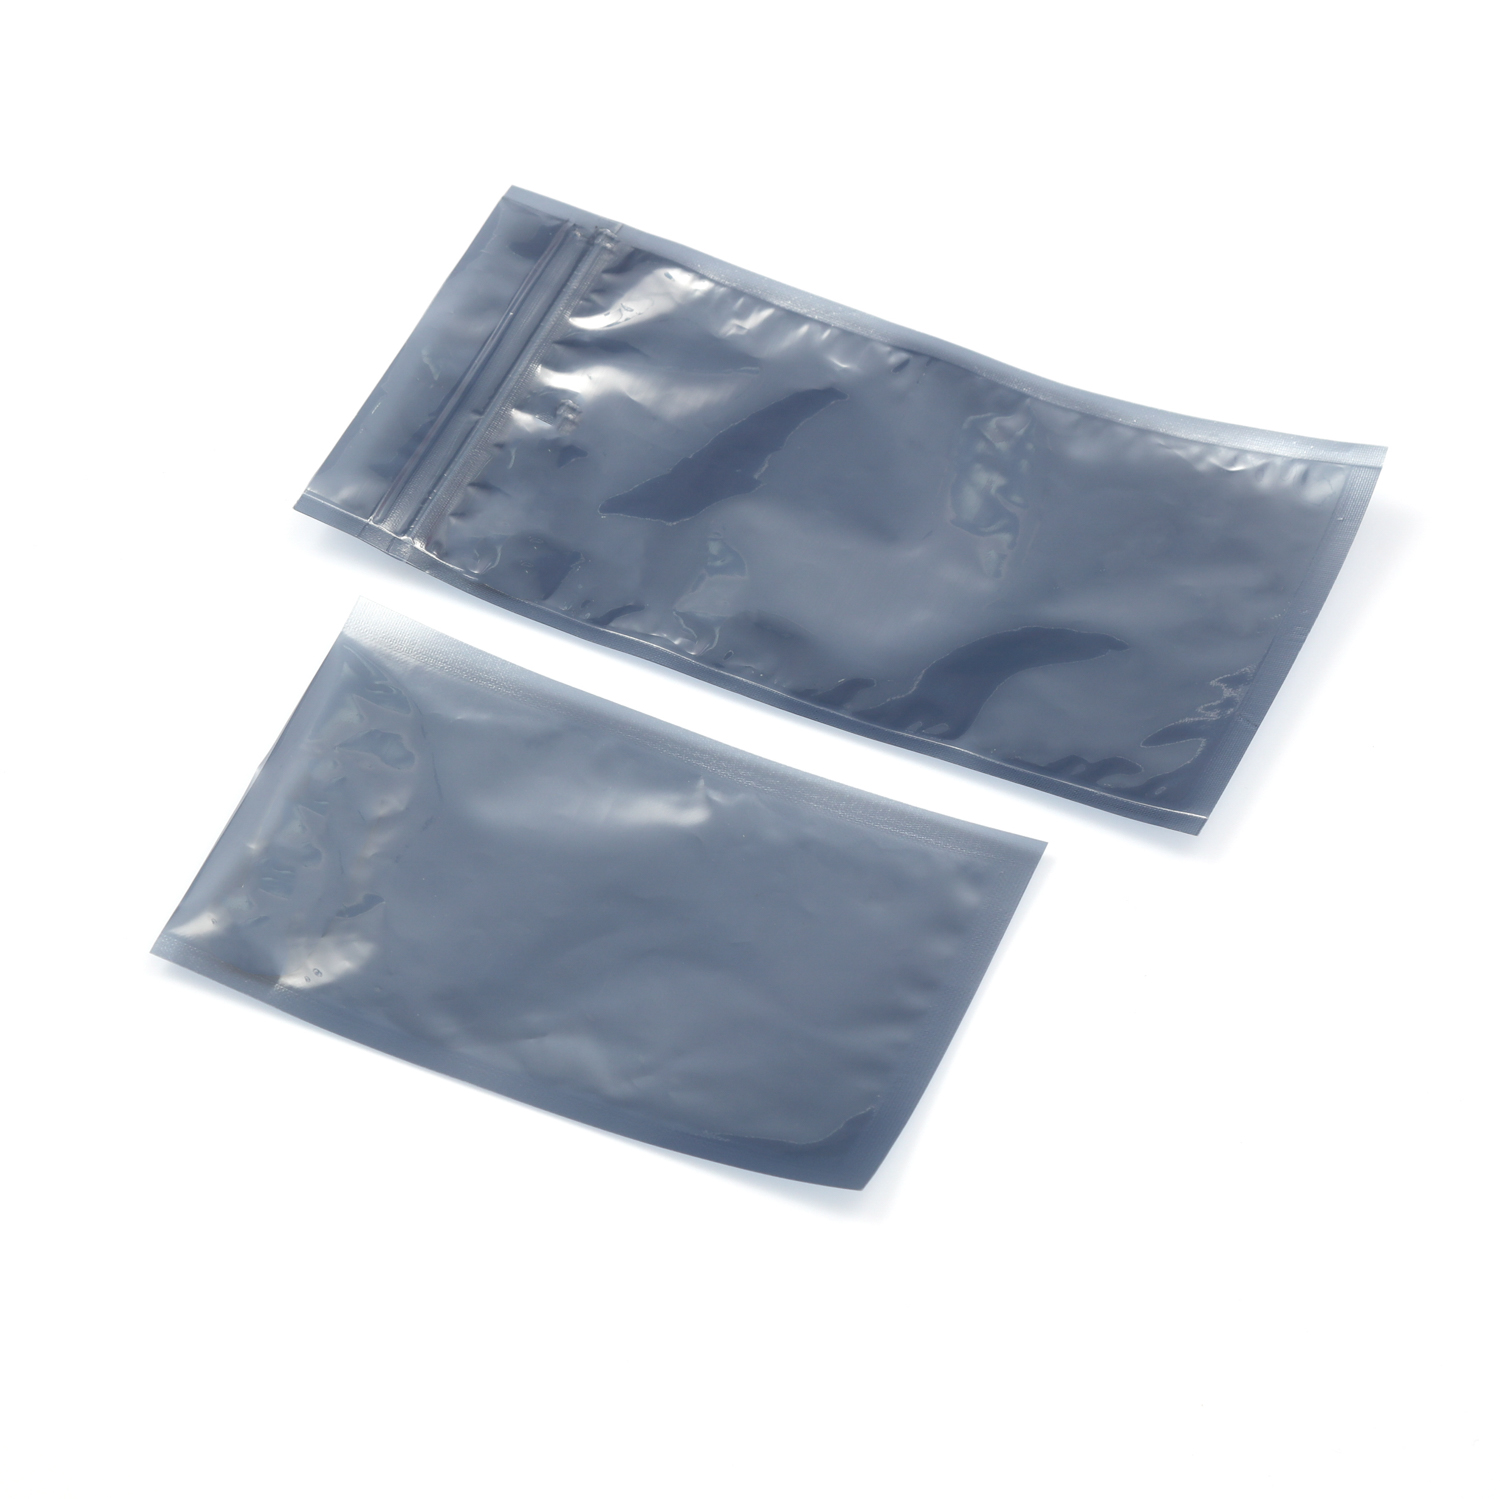 Produits électroniques Emballage en plastique Bouclier antistatique Esd Sac de protection antistatique